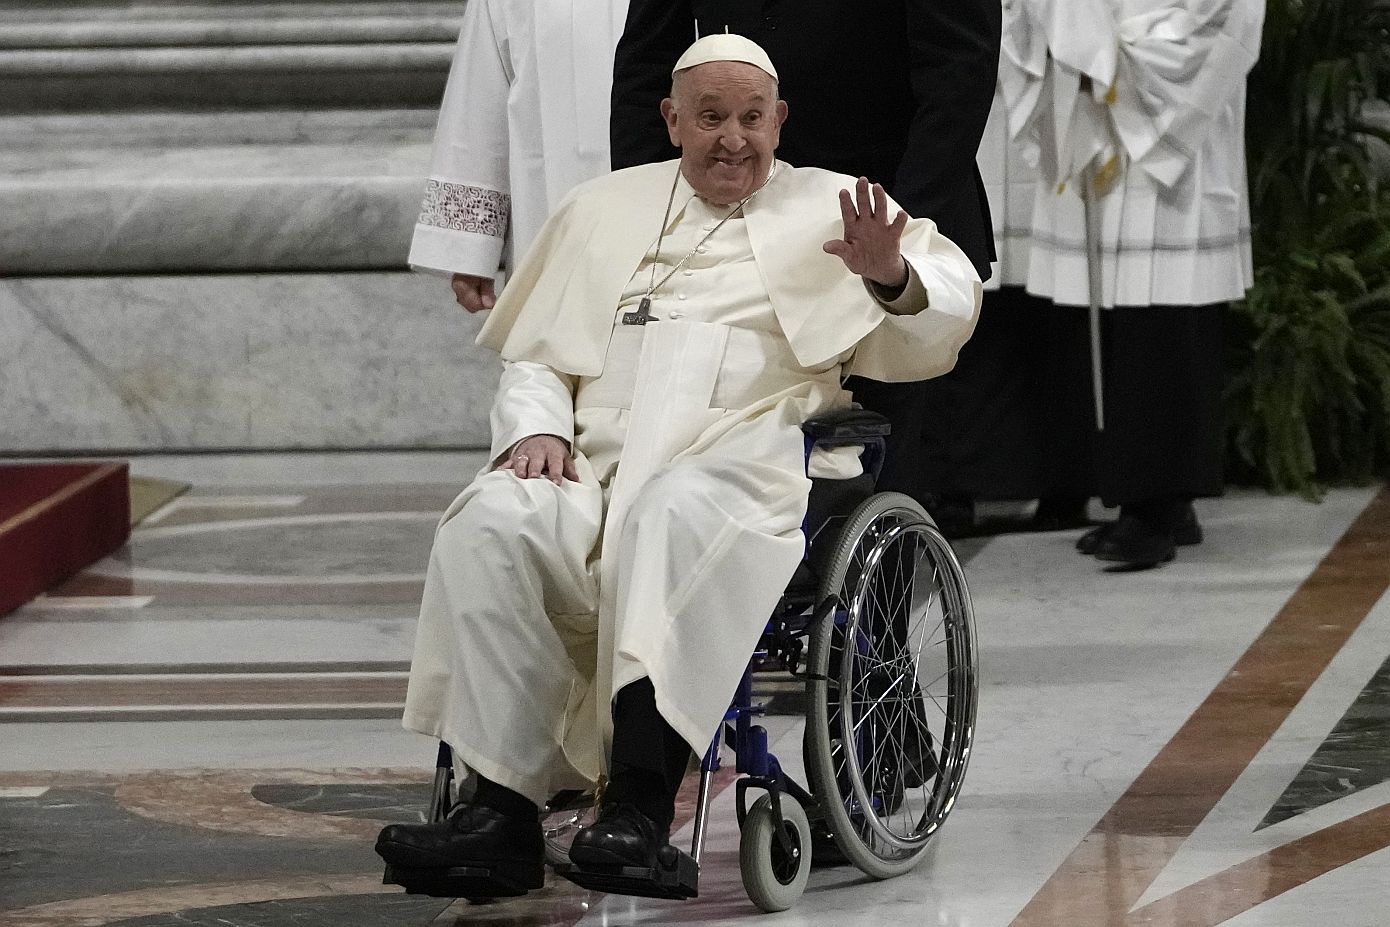 Με αναπηρικό αμαξίδιο εμφανίστηκε ο Πάπας Φραγκίσκος στην πασχαλινή αγρυπνία στο Βατικανό